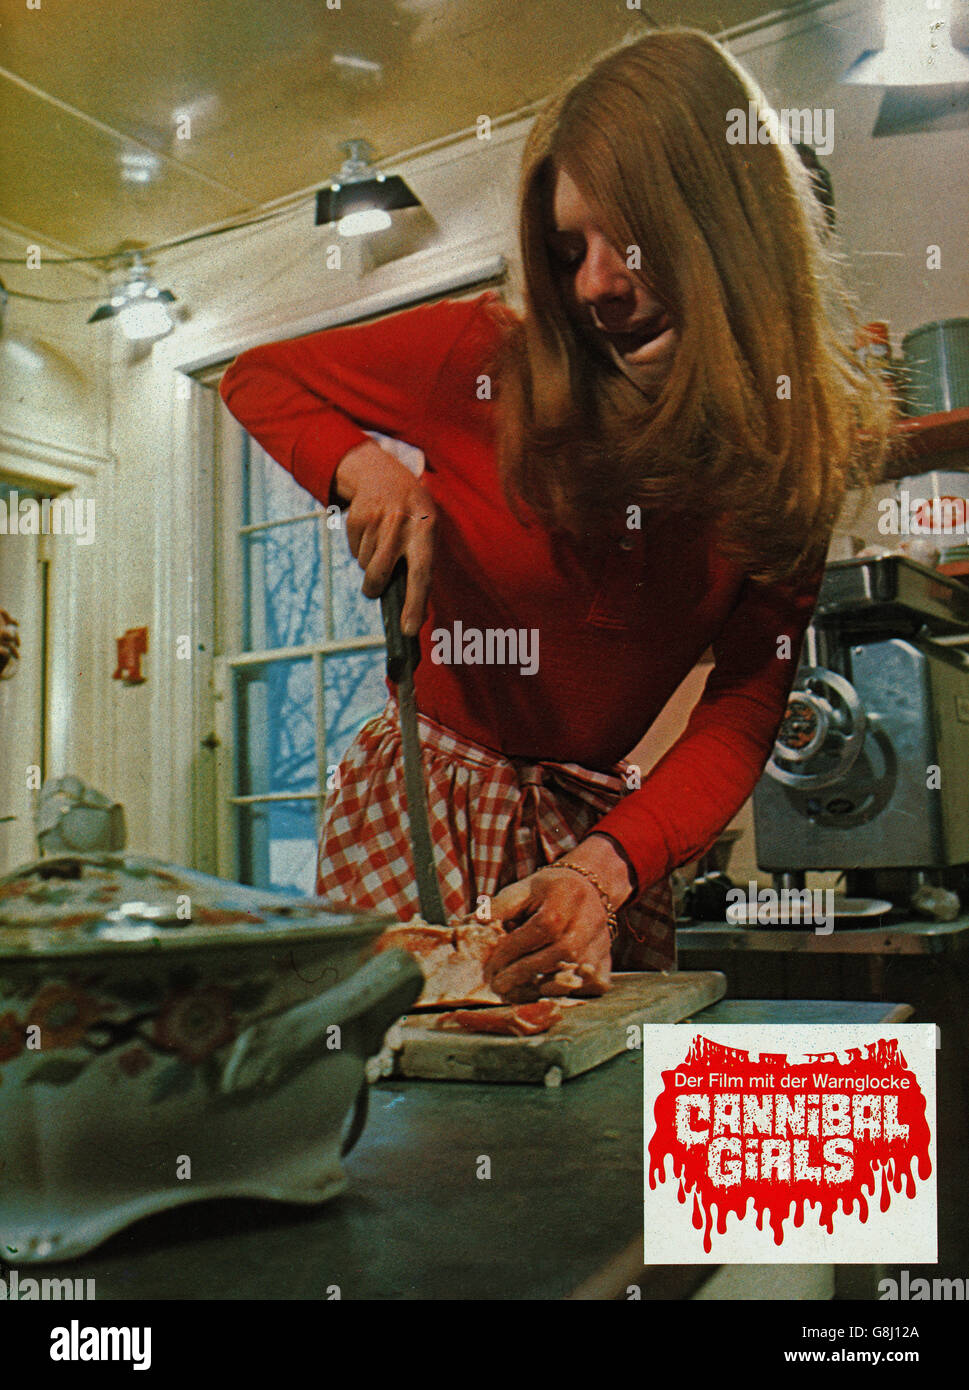 Cannibal ragazze, aka: Cannibal Girls - Der Film mit der Warnglocke, Kanada 1973, Regie: Ivan Reitman, Darsteller: Bonnie Neilson Foto Stock